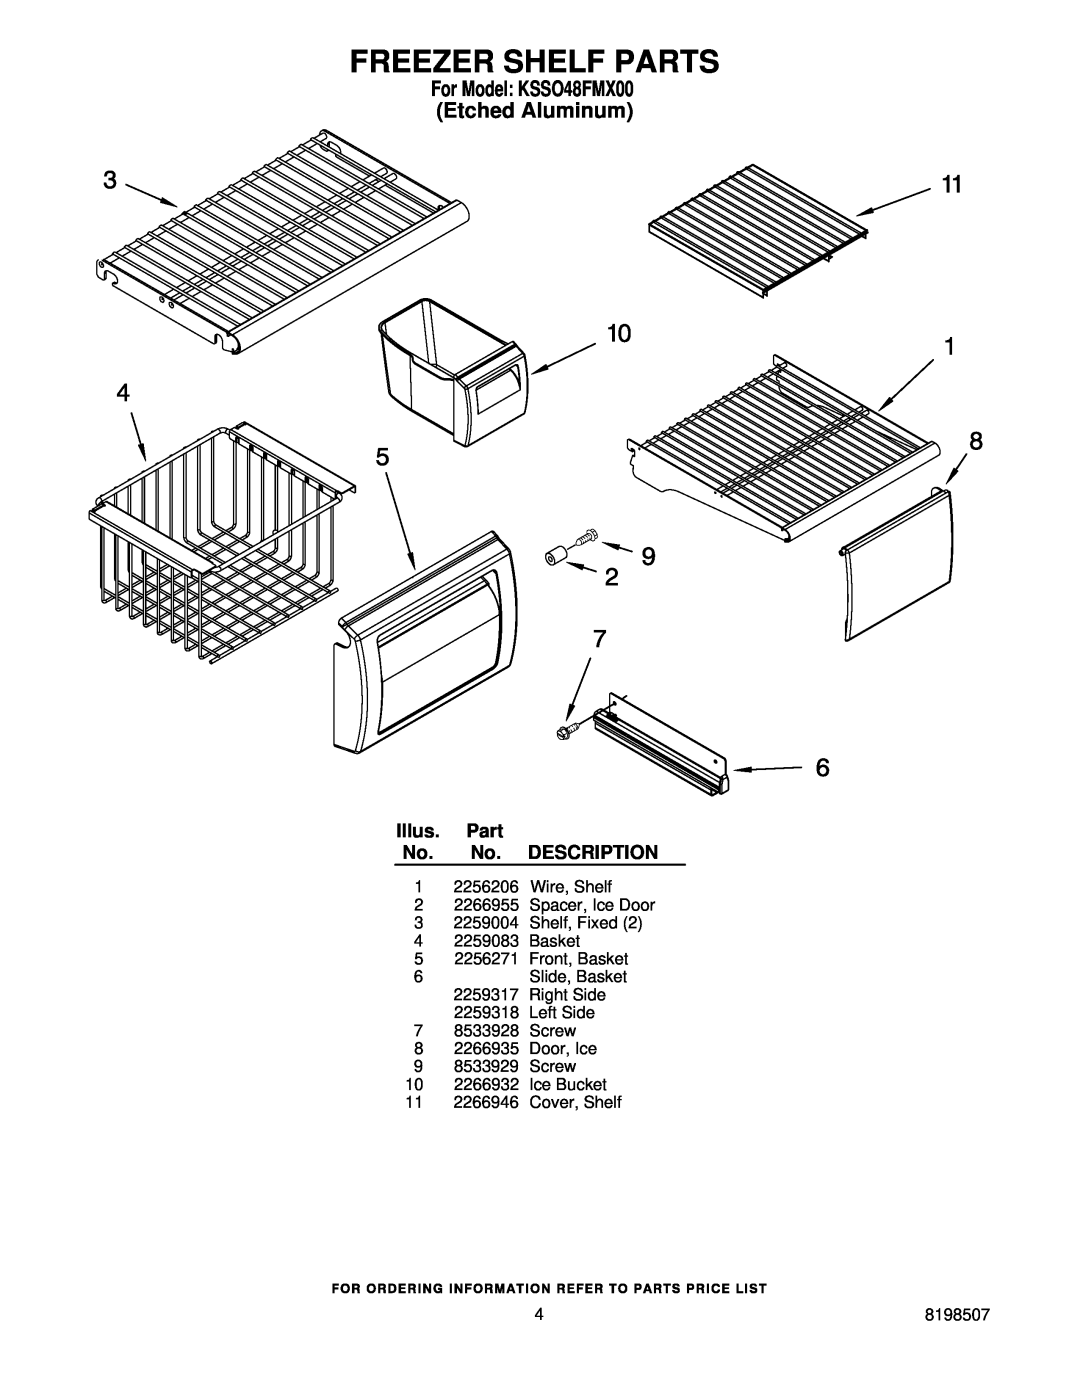 KitchenAid manual Freezer Shelf Parts, For Model KSSO48FMX00 Etched Aluminum, Illus. Part No. No. DESCRIPTION 